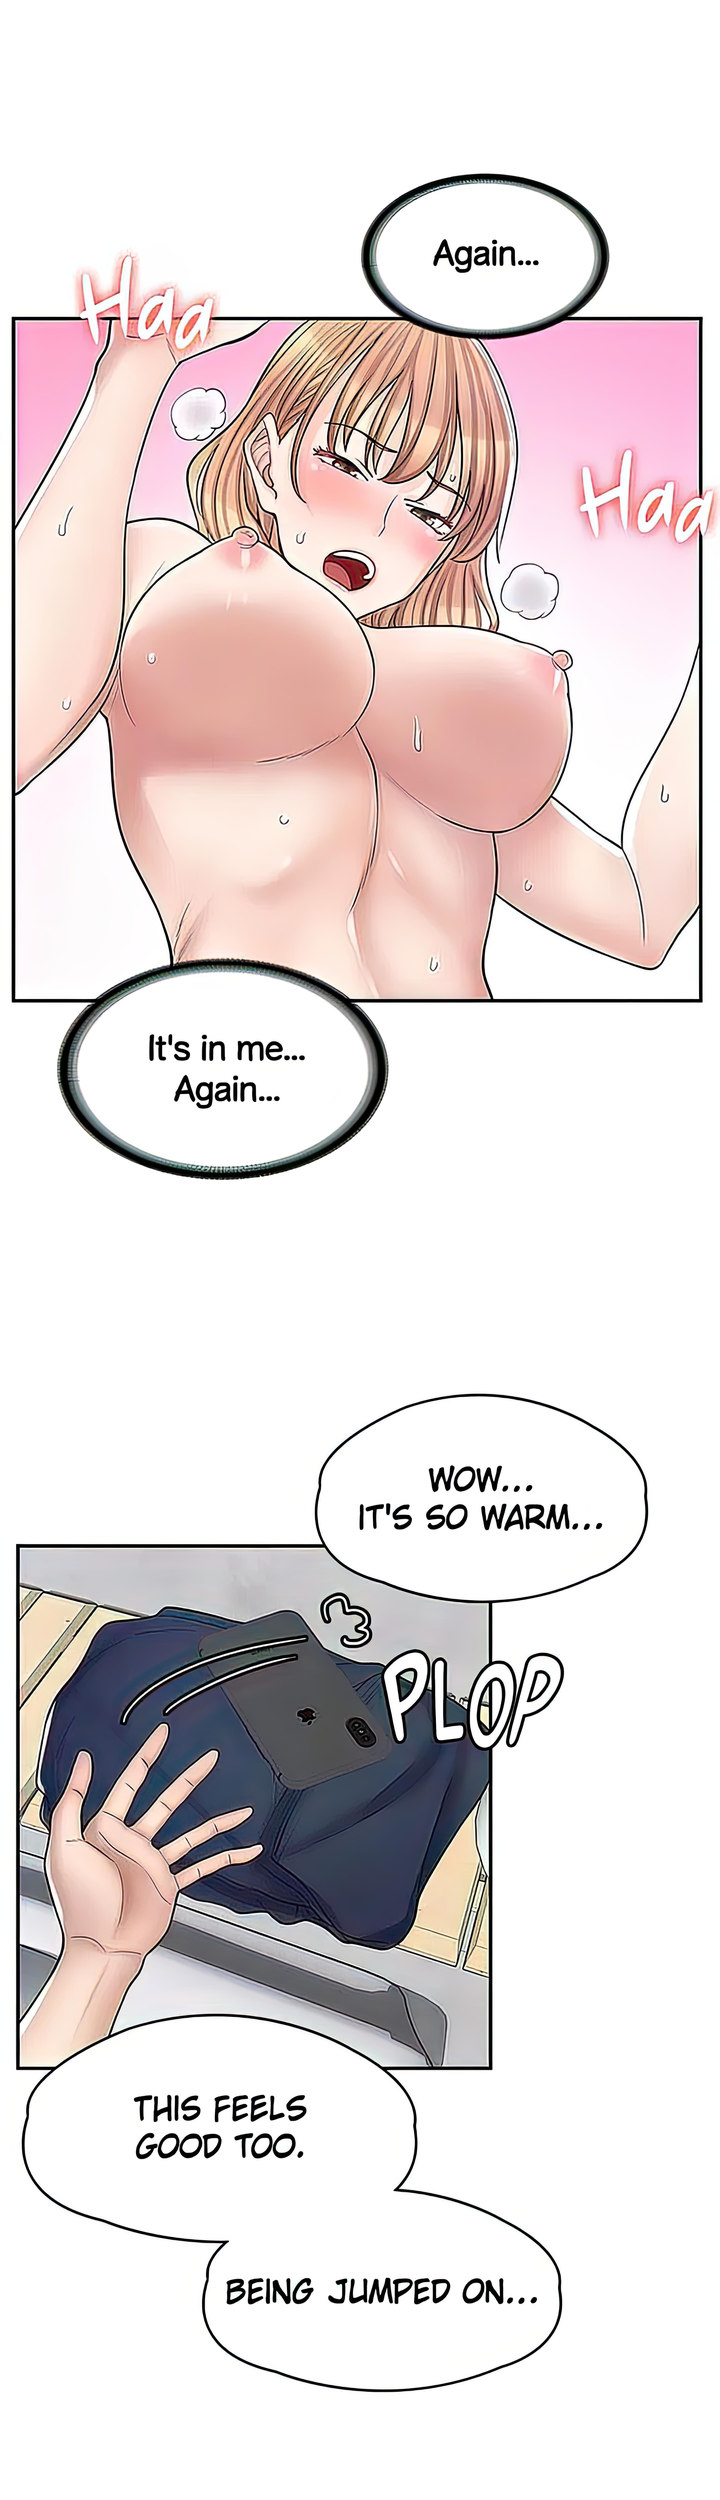 The image Erotic Manga Café Girls - Chapter 09 - 2037c7899cf637bfa7 - ManhwaManga.io